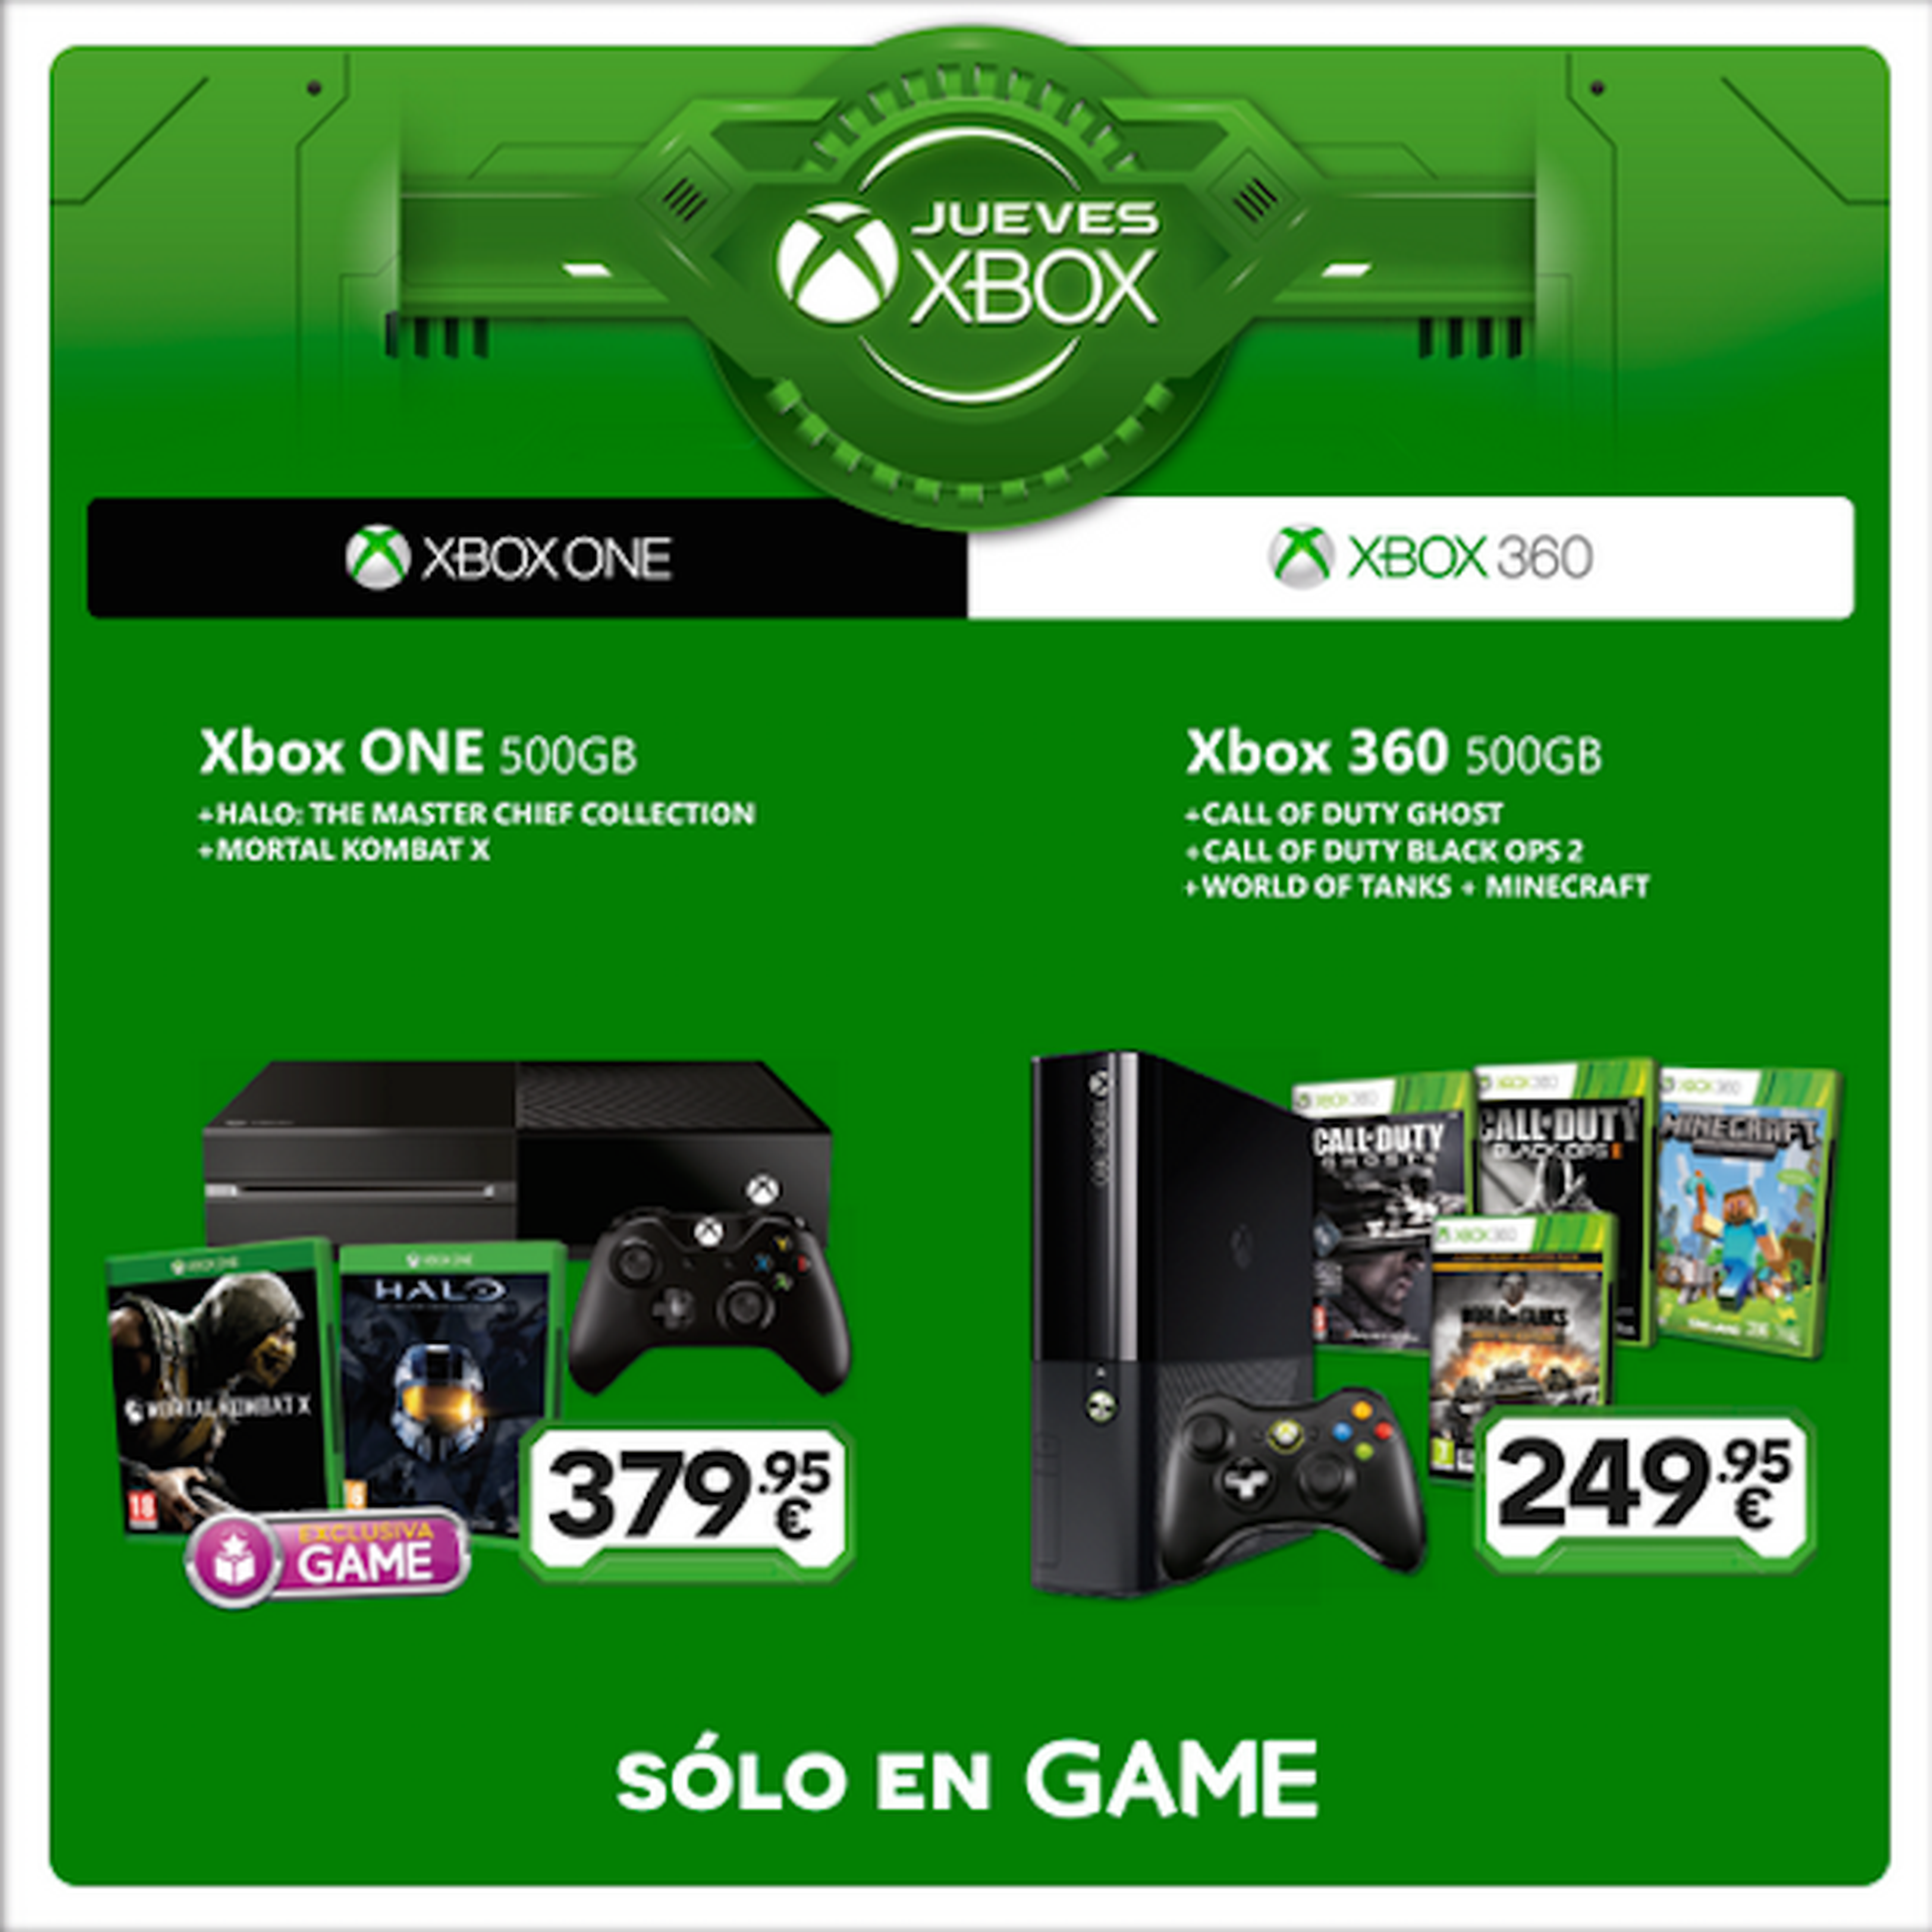 Jueves Xbox en GAME: séptima semana de ofertas